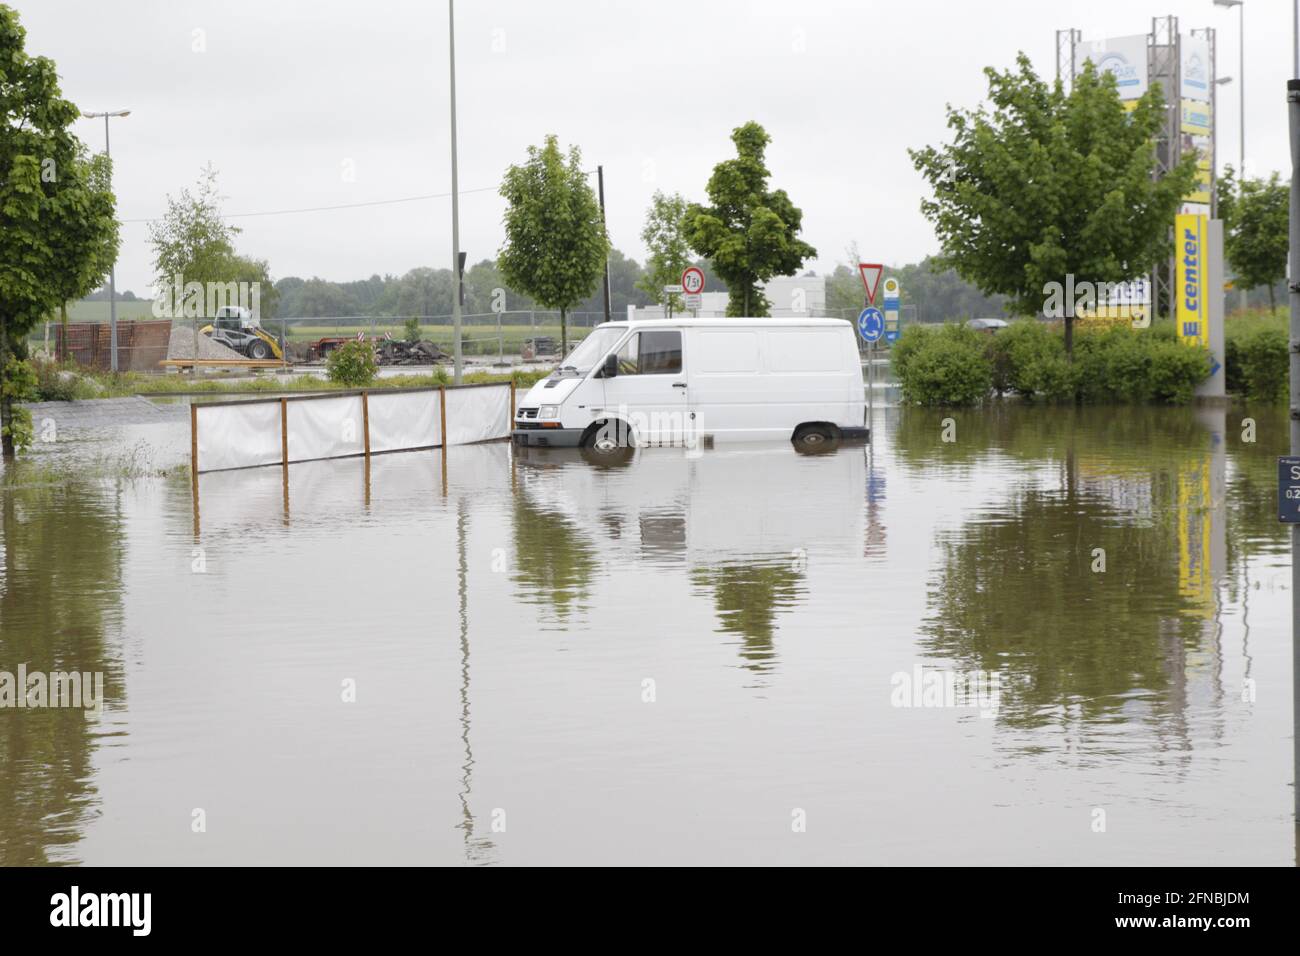 Ein Transporter bei Überschwemmung auf einem Parkplatz Hochwasser bis über Die Reifen Foto Stock